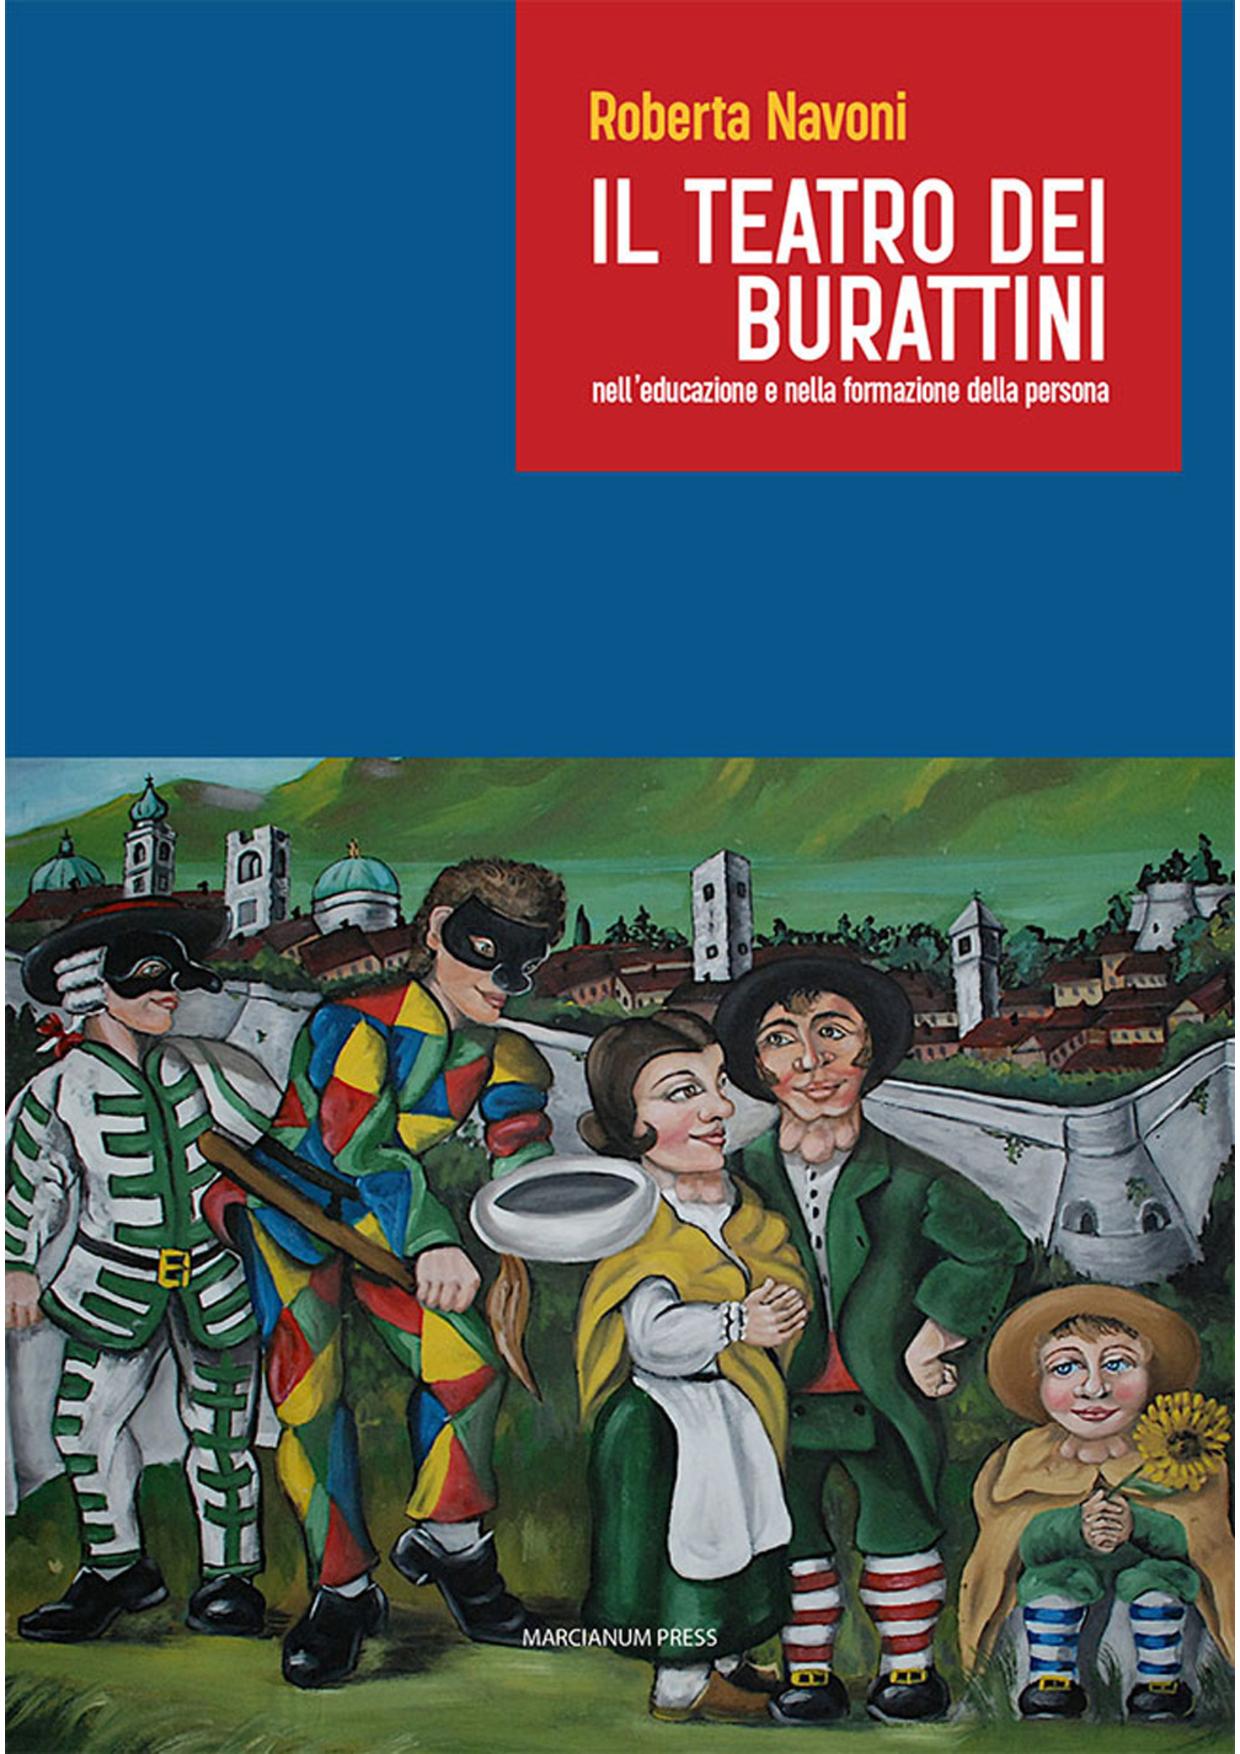 Navoni_Il teatro dei burattini-page-001